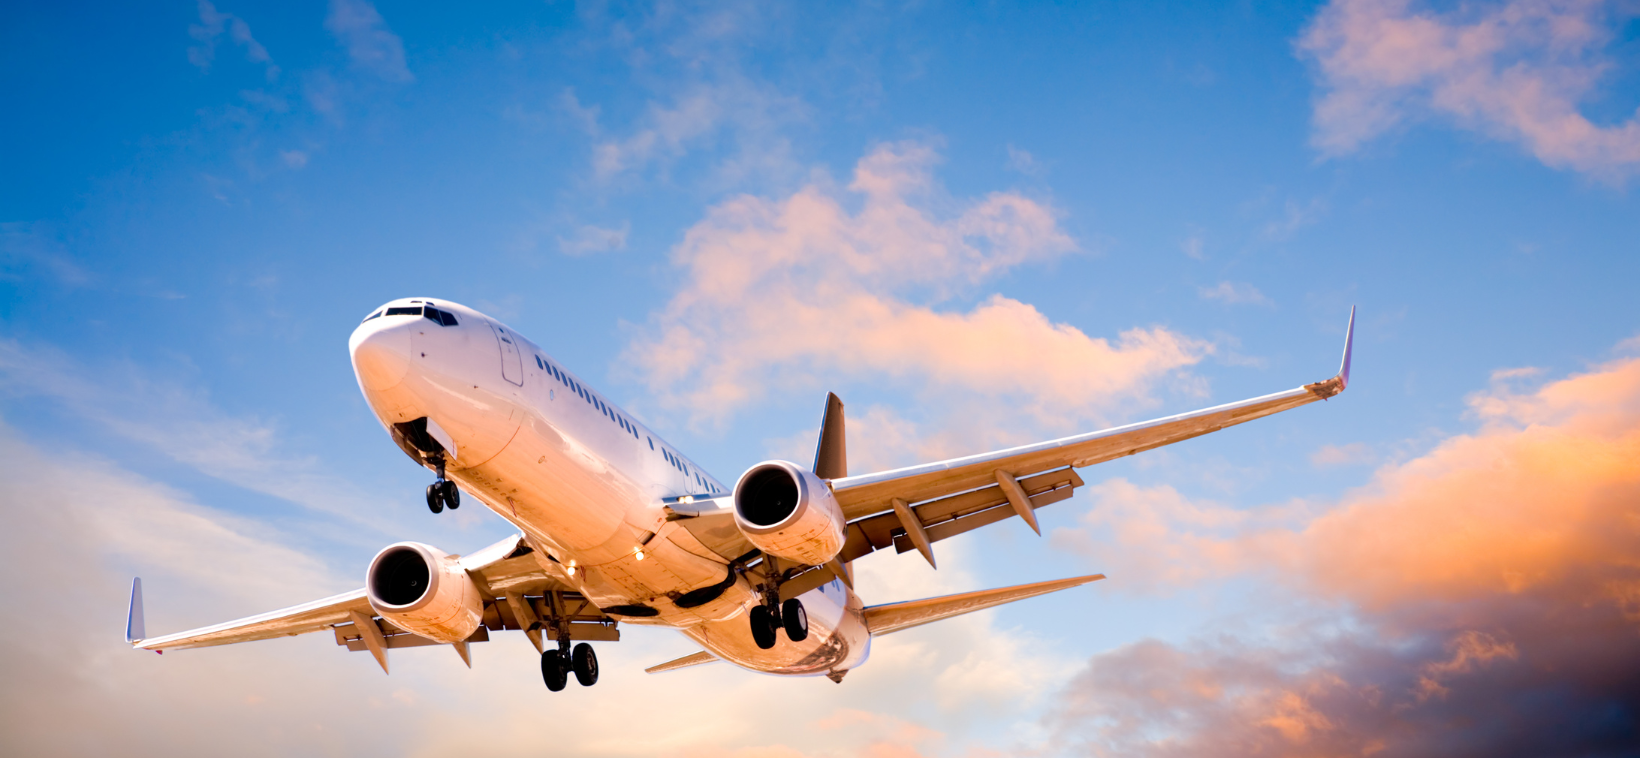 Holiday Turbulence: Unaccompanied Minors Put On Wrong Flights